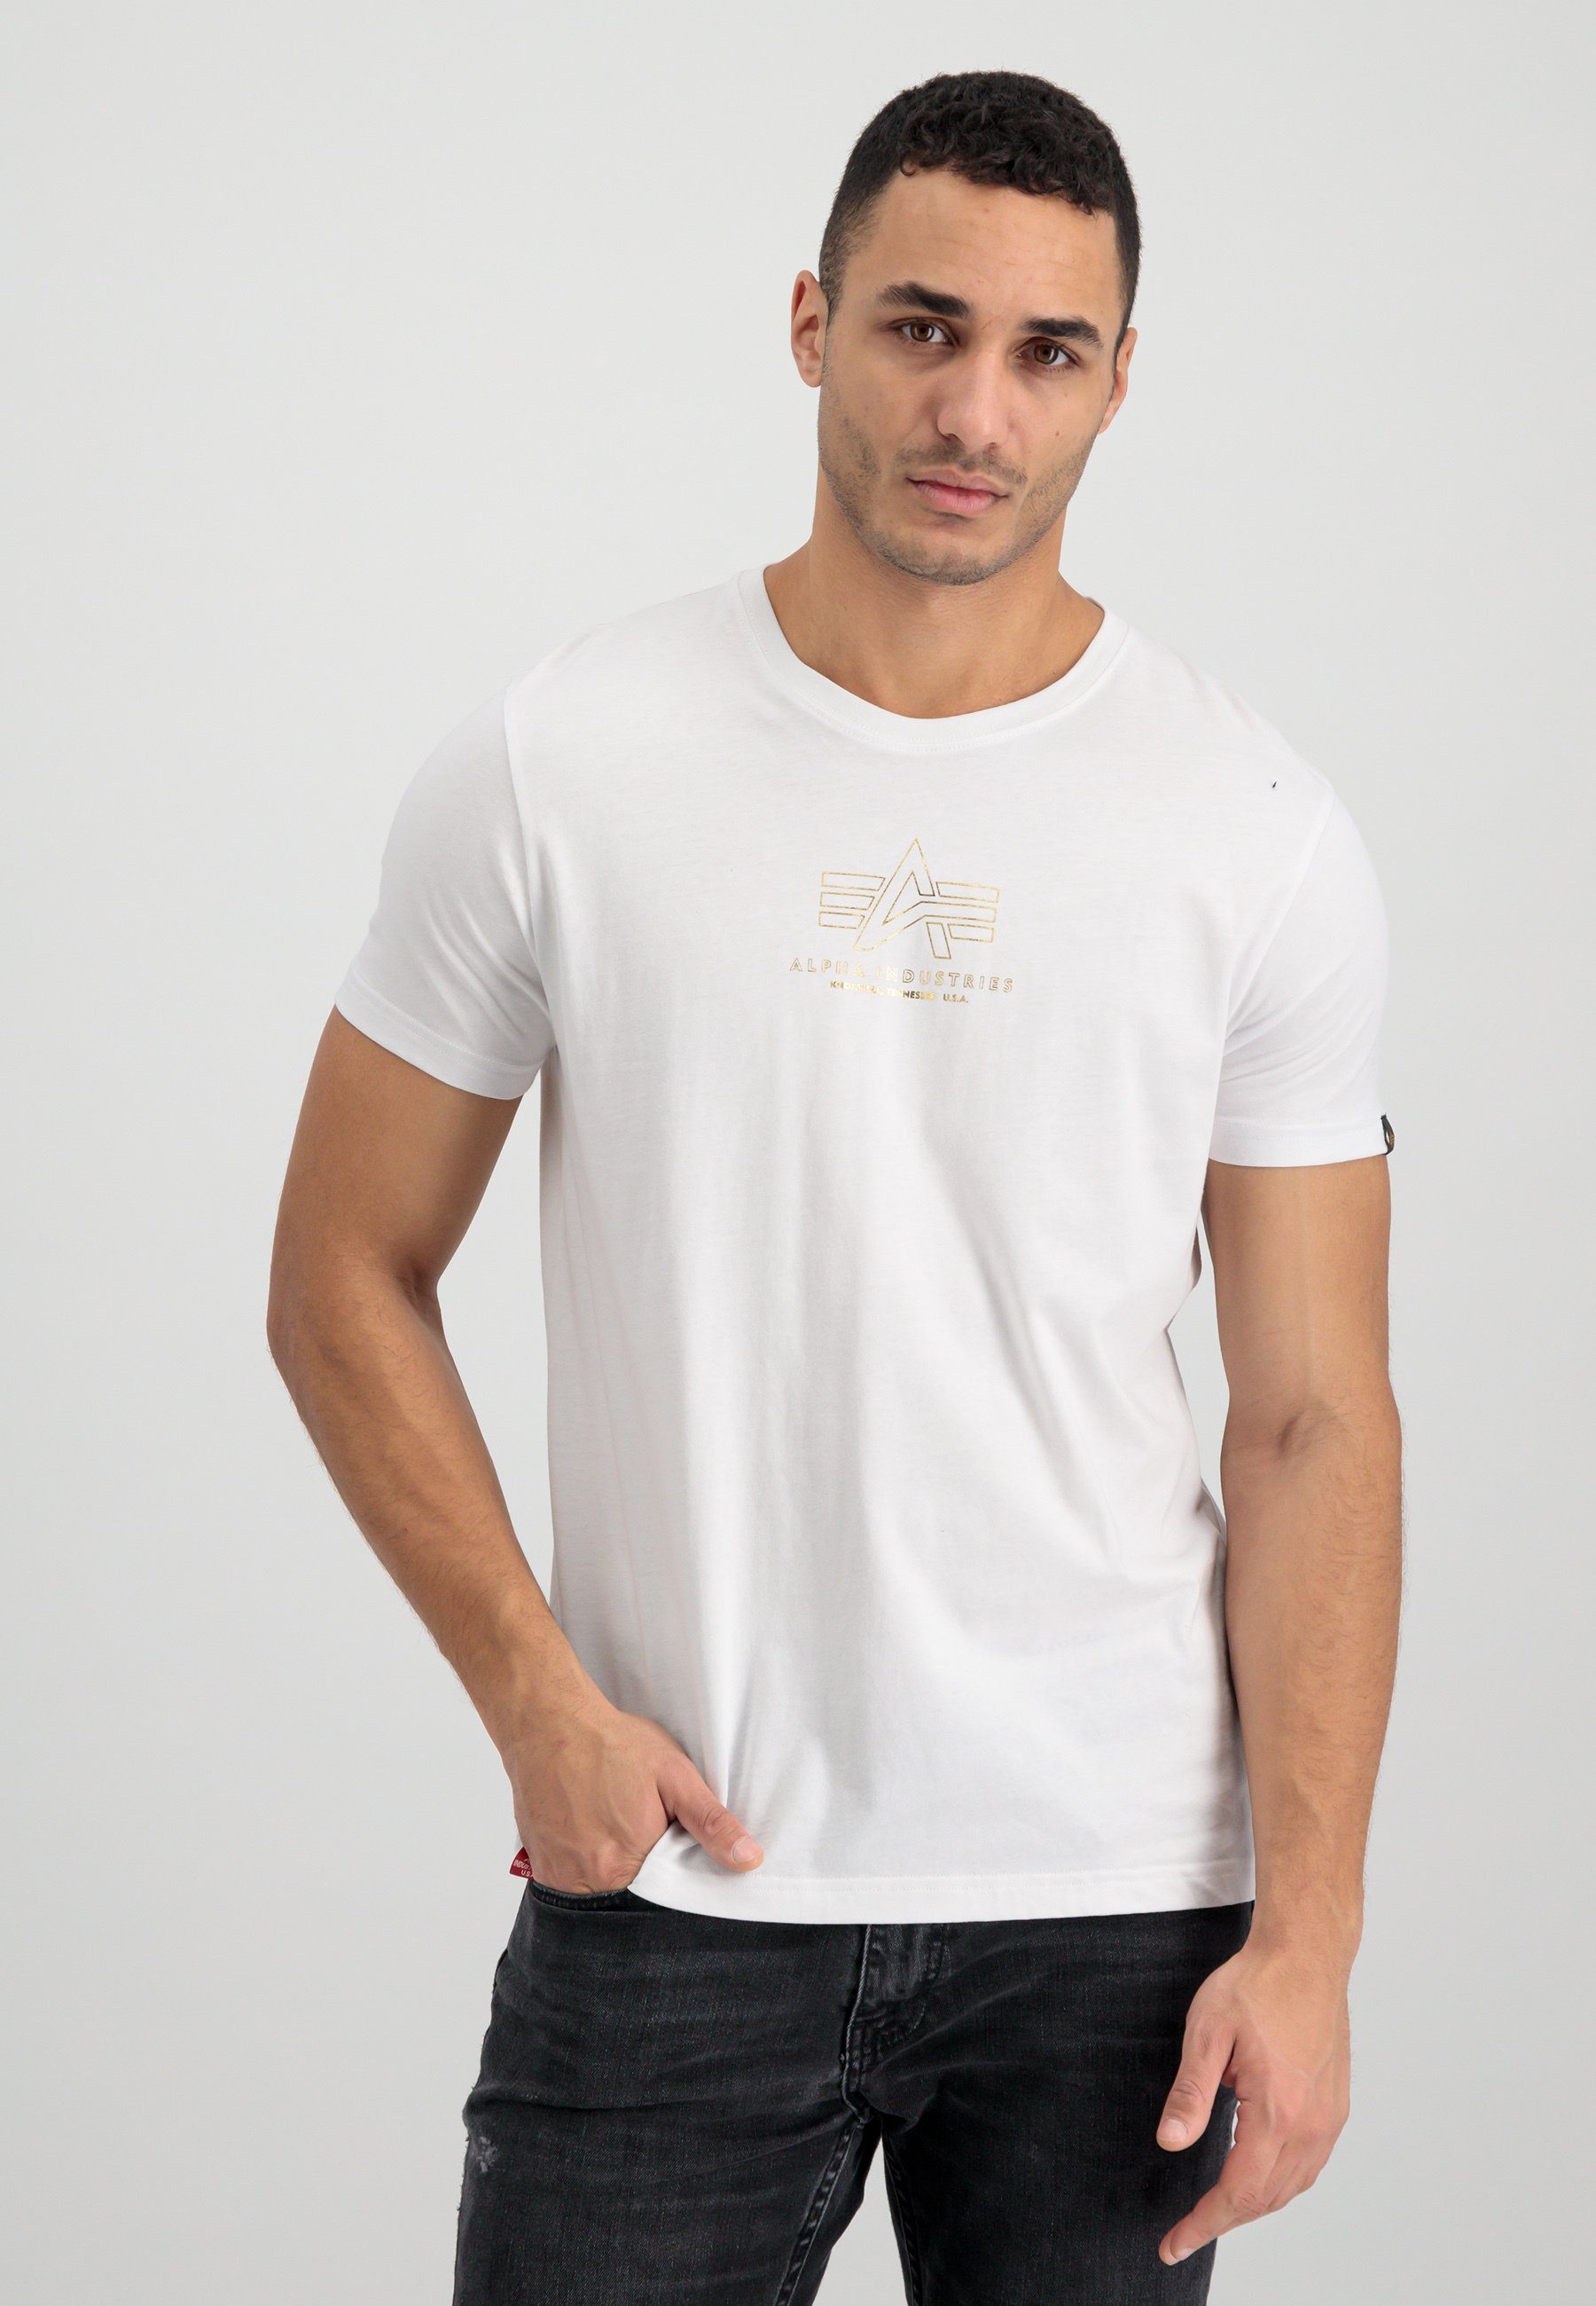 Men Industries Alpha Foil Industries am an den Basic - und ML Ärmeln Kontrastrippe T-Shirts Halsausschnitt Print, T-Shirt Alpha T